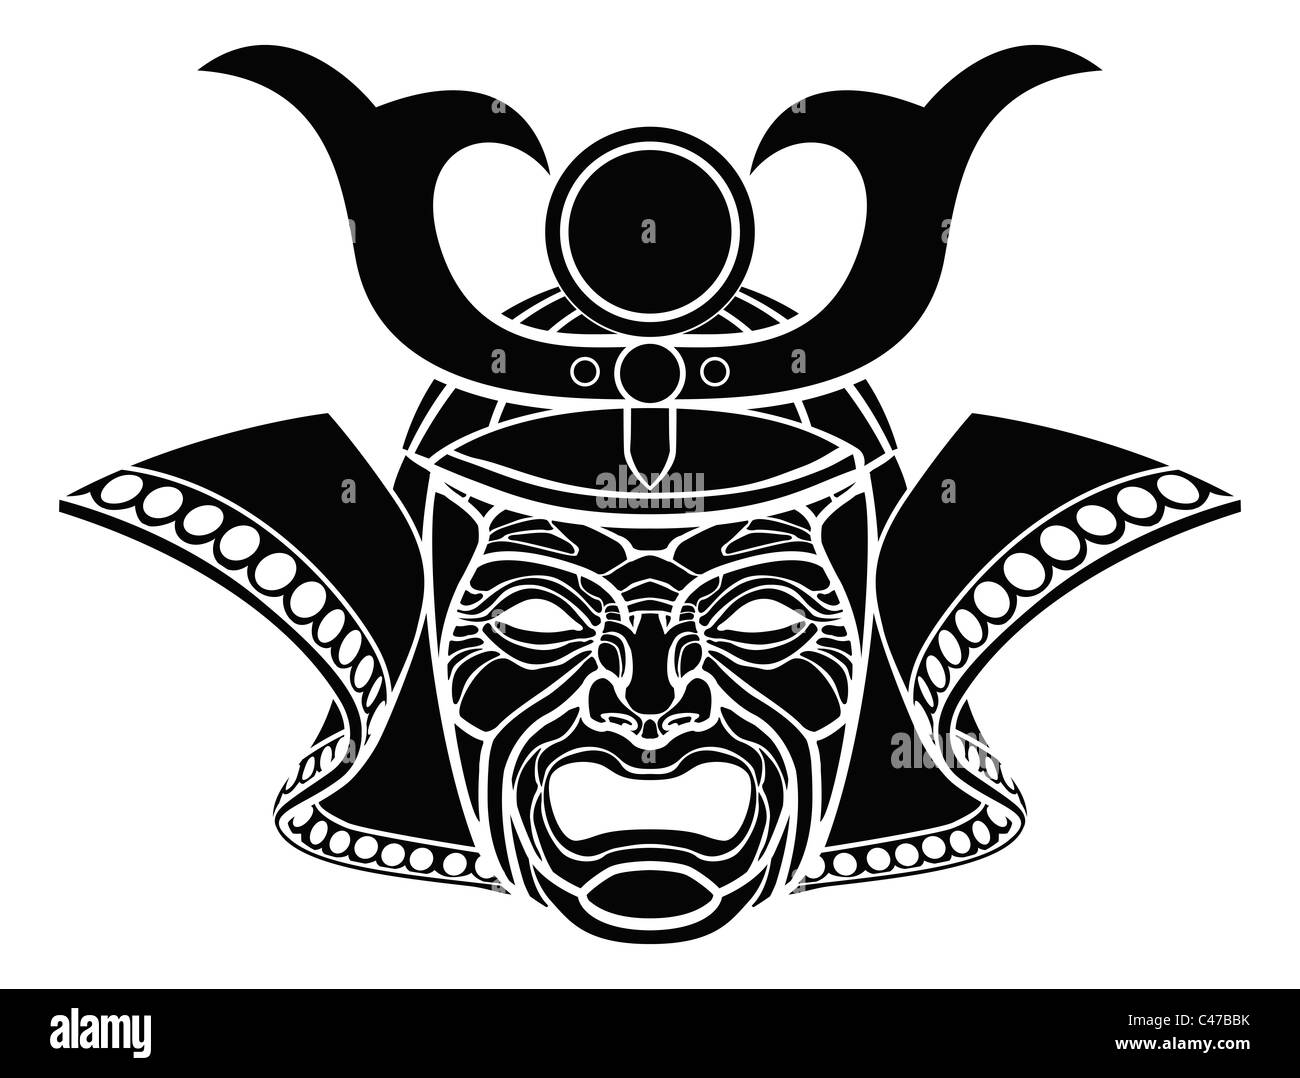 Ein Beispiel für eine furchterregende monochrome Samurai-Maske Stockfoto